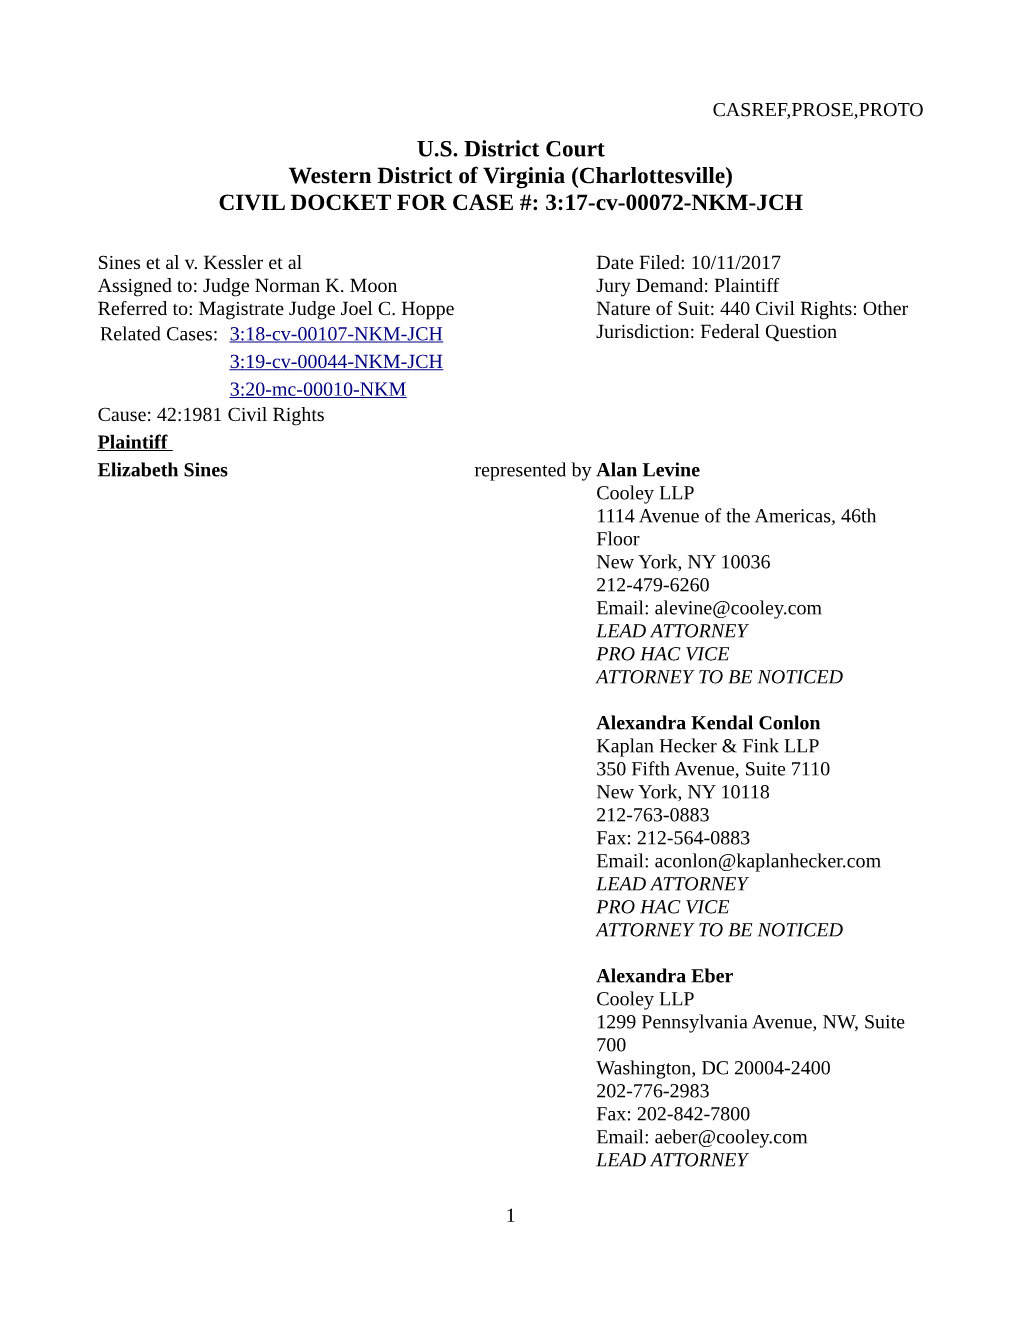 Charlottesville) CIVIL DOCKET for CASE #: 3:17-Cv-00072-NKM-JCH